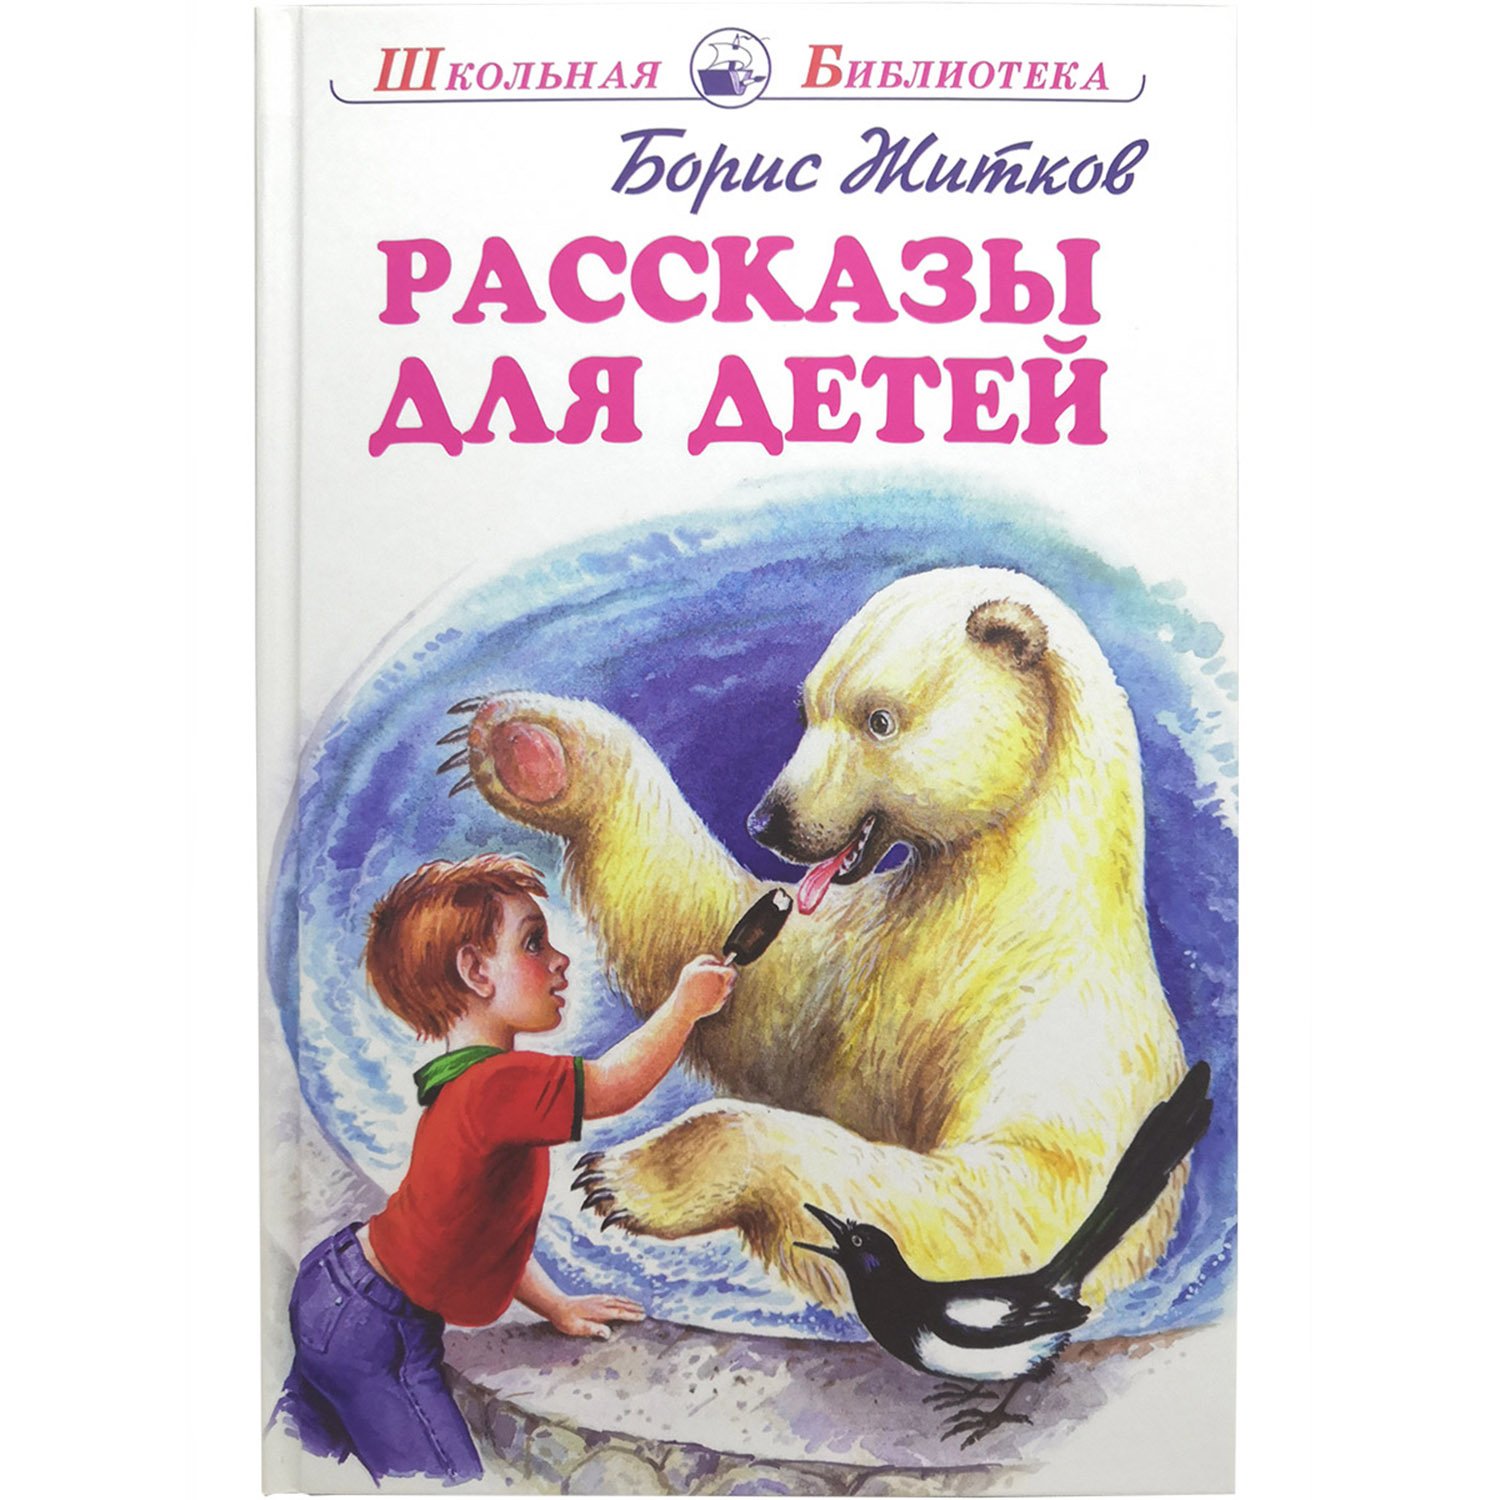 Рассказы о детях Борис Житков книга